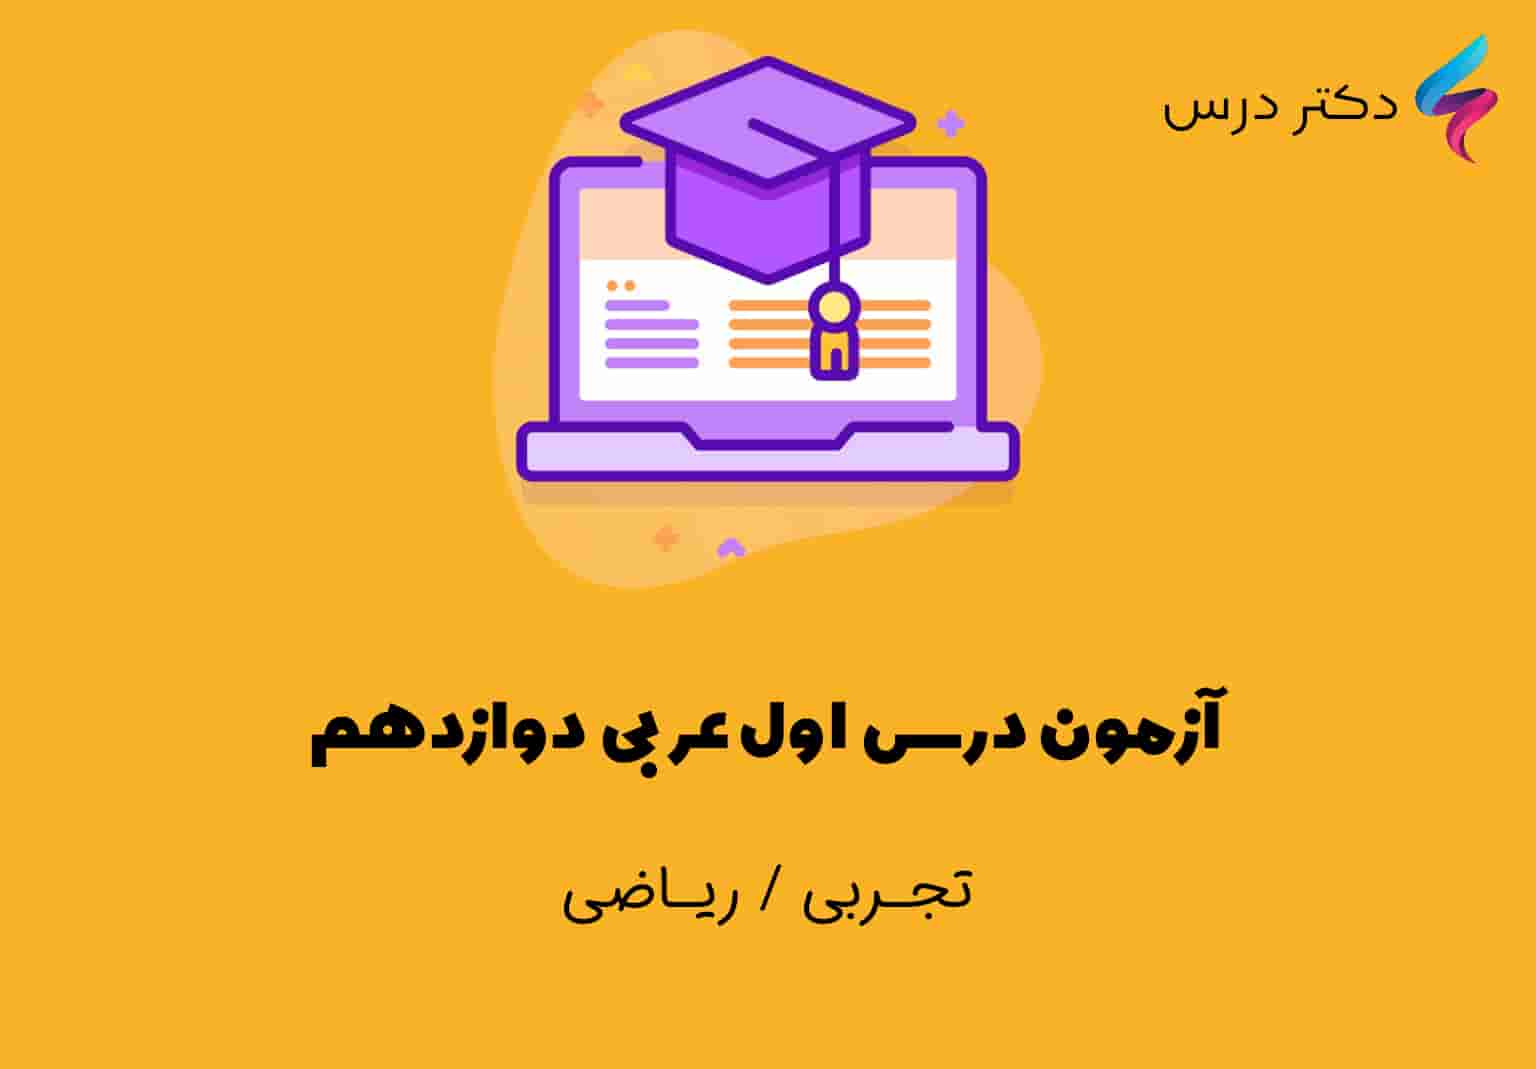 آزمون درس اول عربی دوازدهم + پاسخ تشریحی